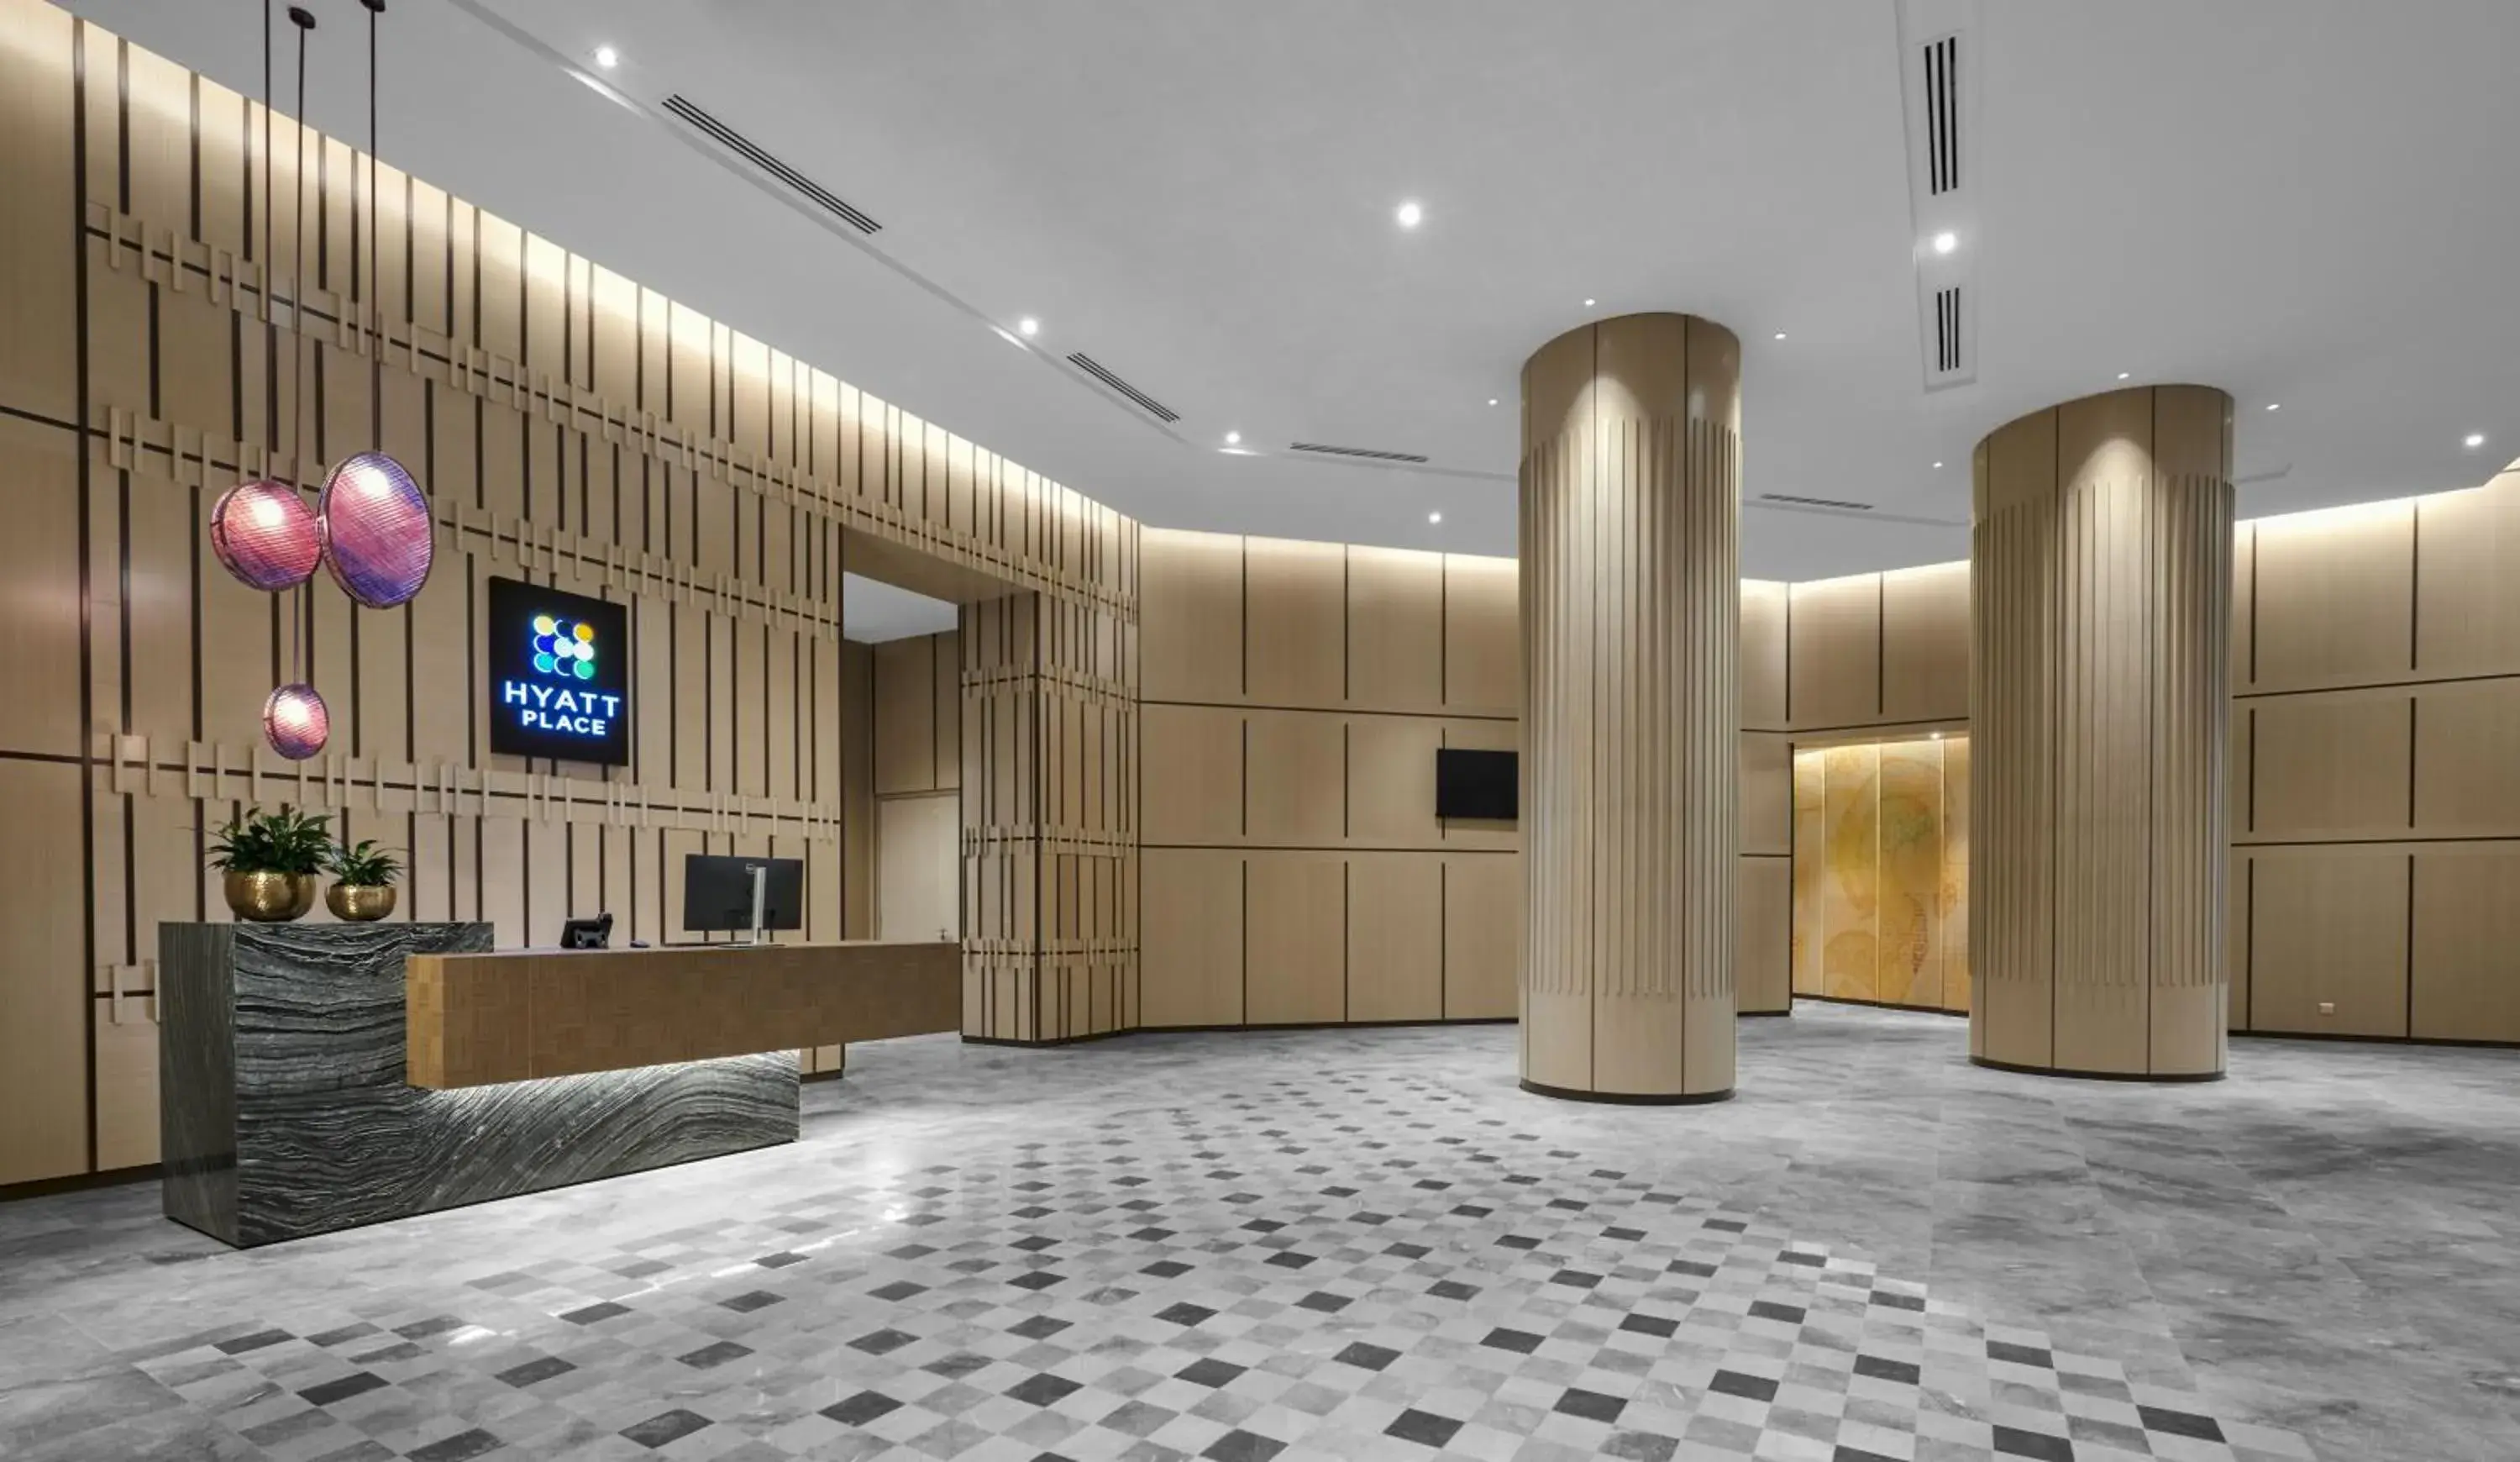 Lobby or reception in Hyatt Place Johor Bahru Paradigm Mall